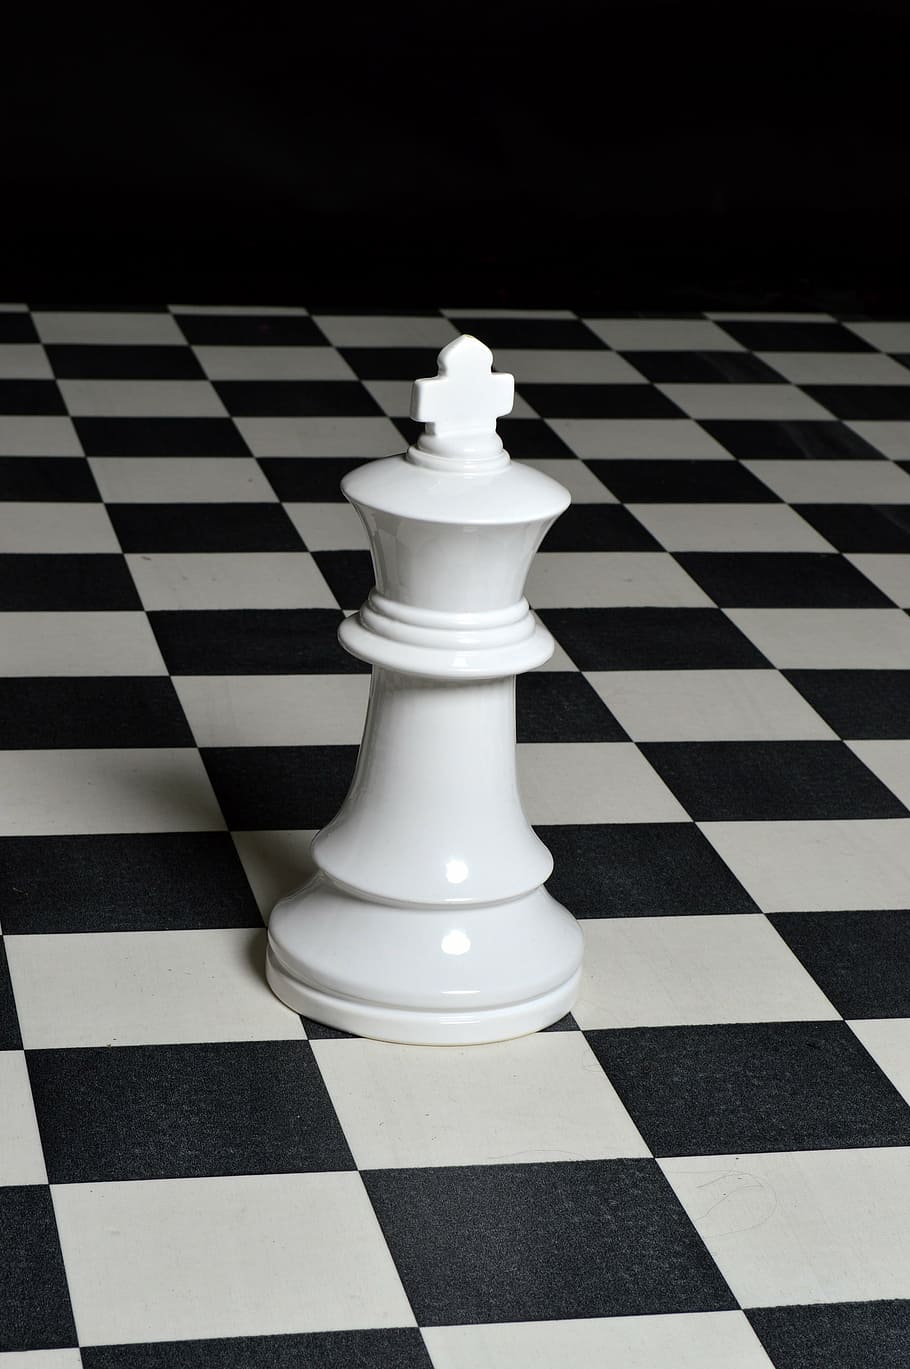 pieza de ajedrez, ajedrez, estrategia, tablero, rey, juego, juego de mesa, juegos de ocio, patrón controlado, color blanco